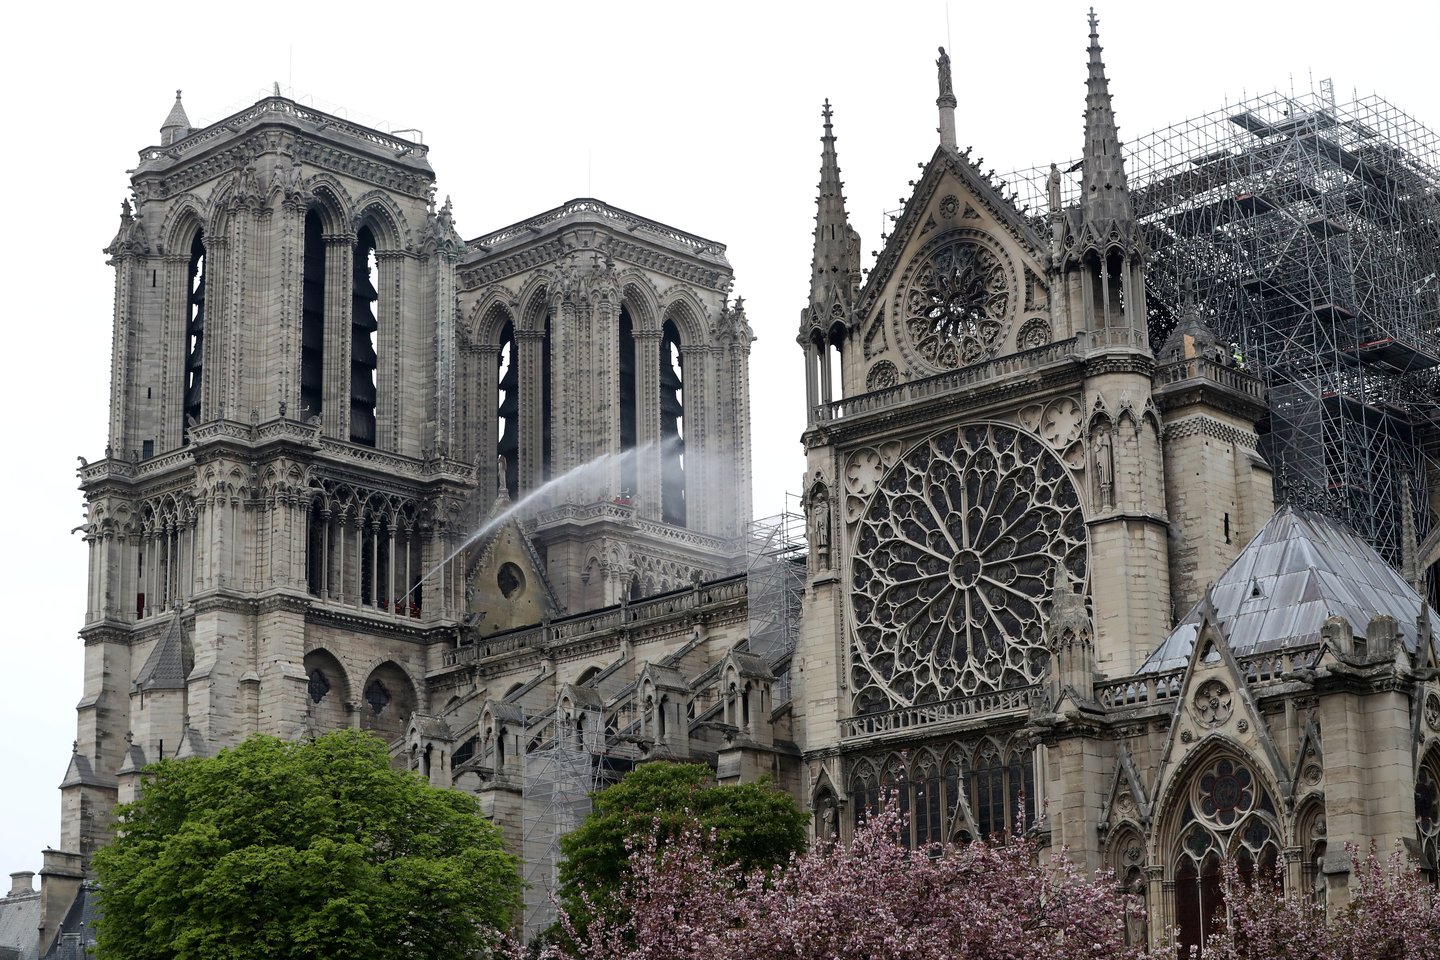  Iš išorės Švč. Dievos motinos katedra nukentėjo ne taip jau ir baisiai: trūksta tik kartą jau nugriauto špilio.<br> Reuters / Scanpix nuotr.